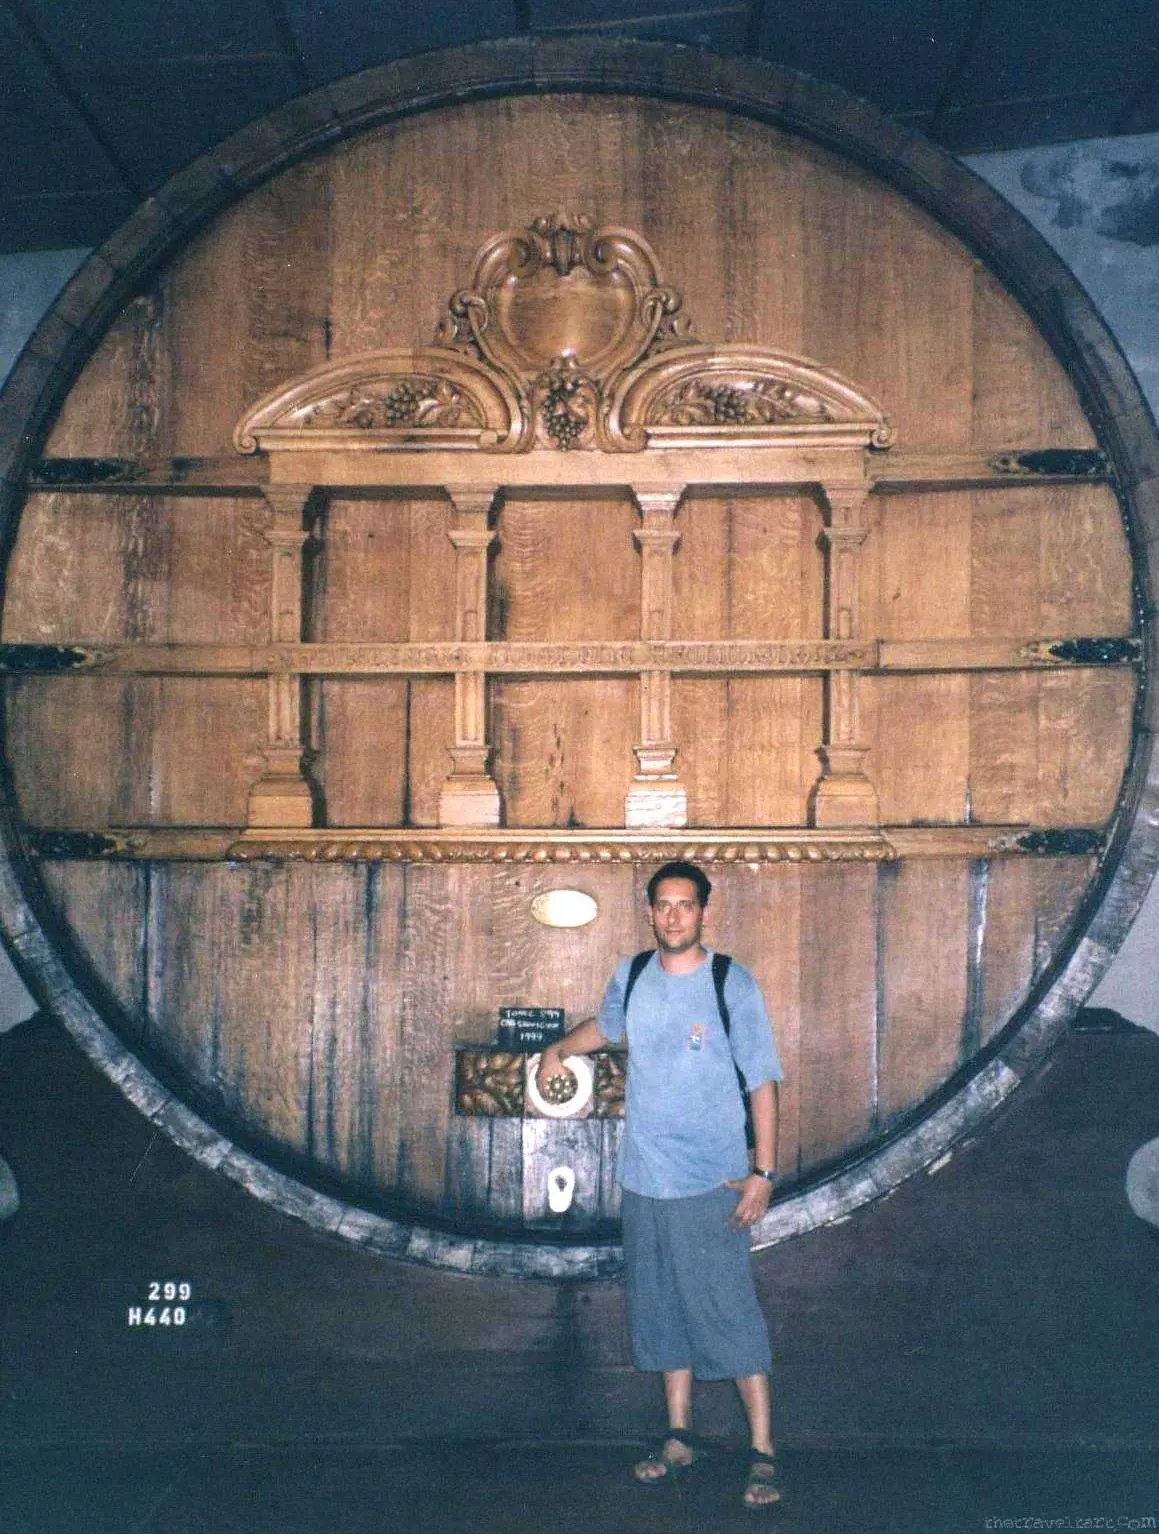 Wine Barrel | Argentina Travel Blog | Argentina Wine Tours - Pickle Your Liver At Mendoza, Argentina | Argentina Travel Blog | Author: Anthony Bianco - The Travel Tart Blog